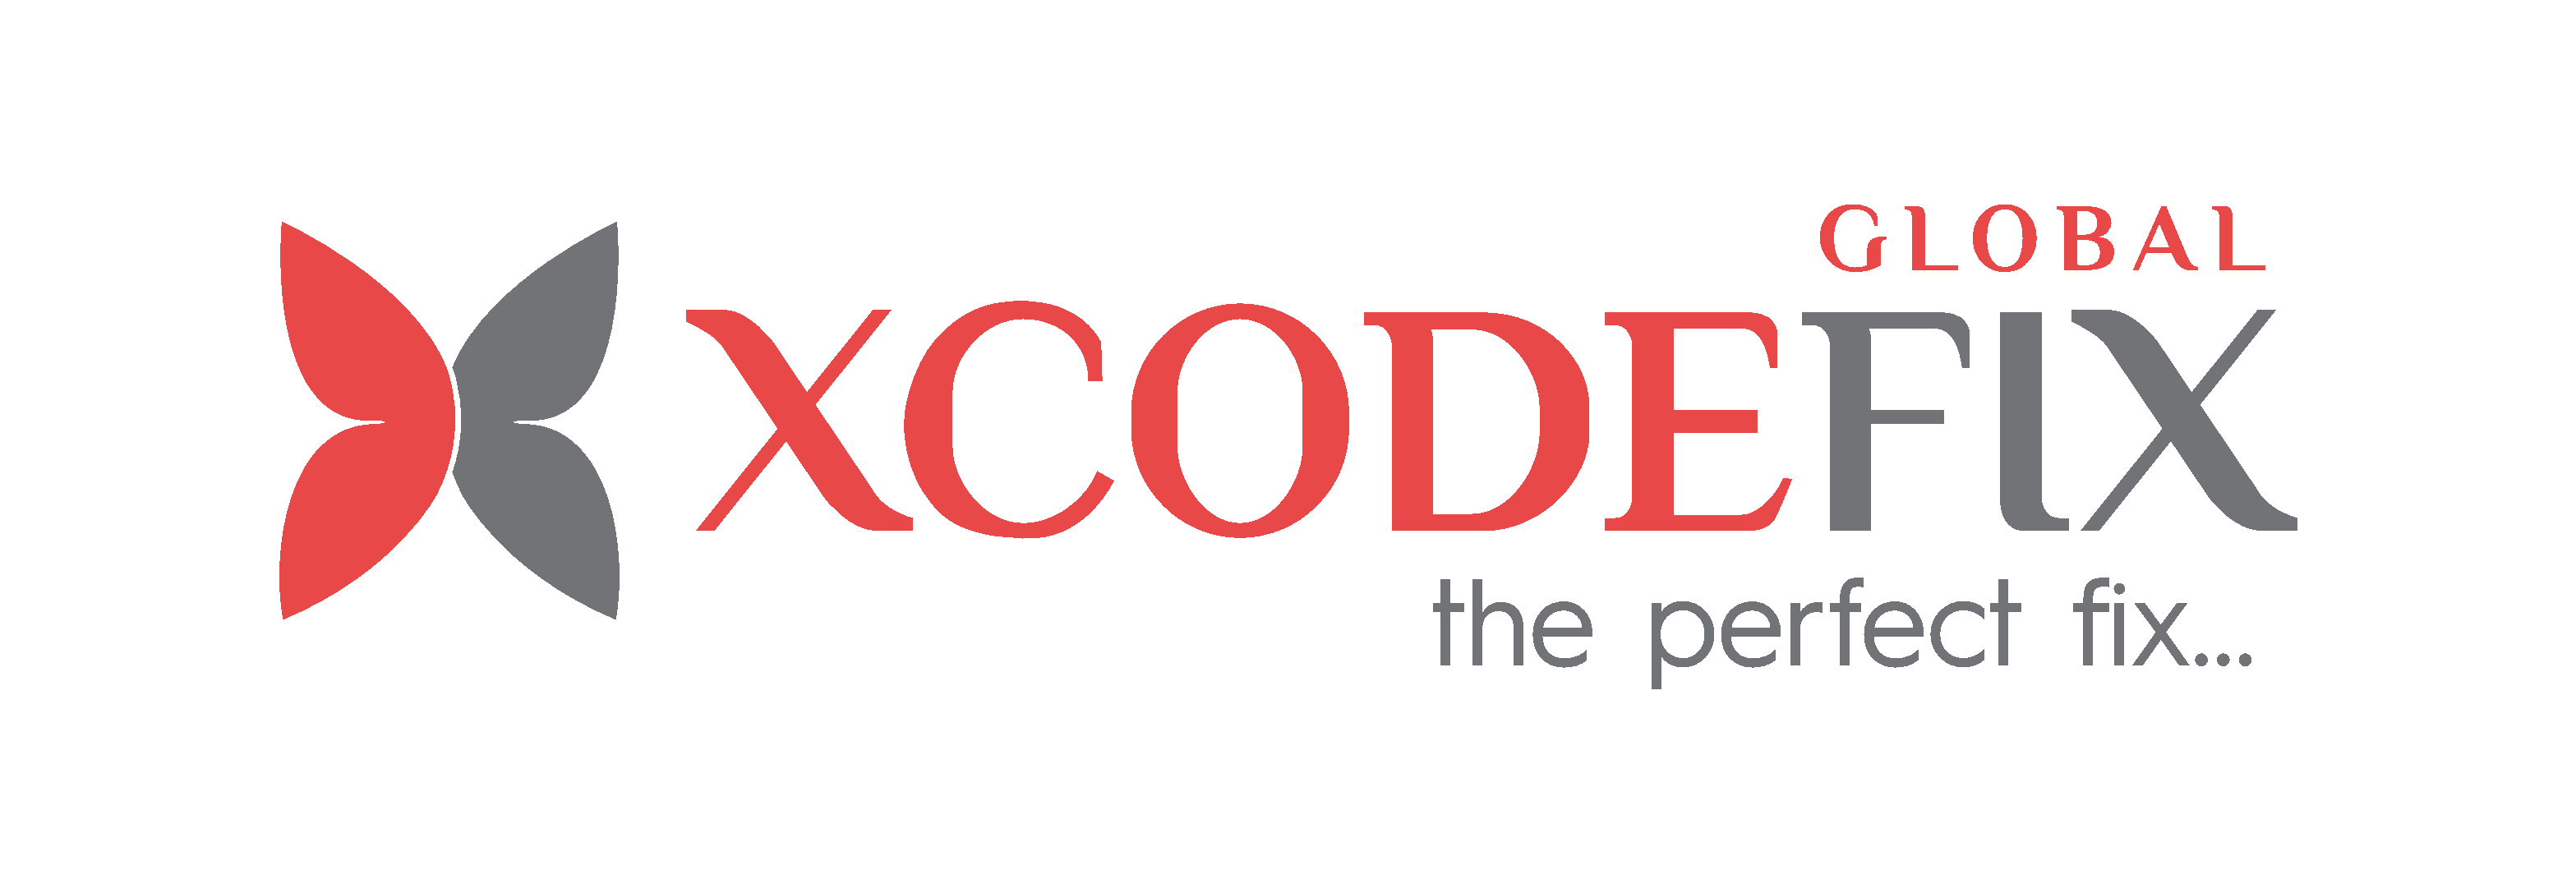 Xcodefix Global